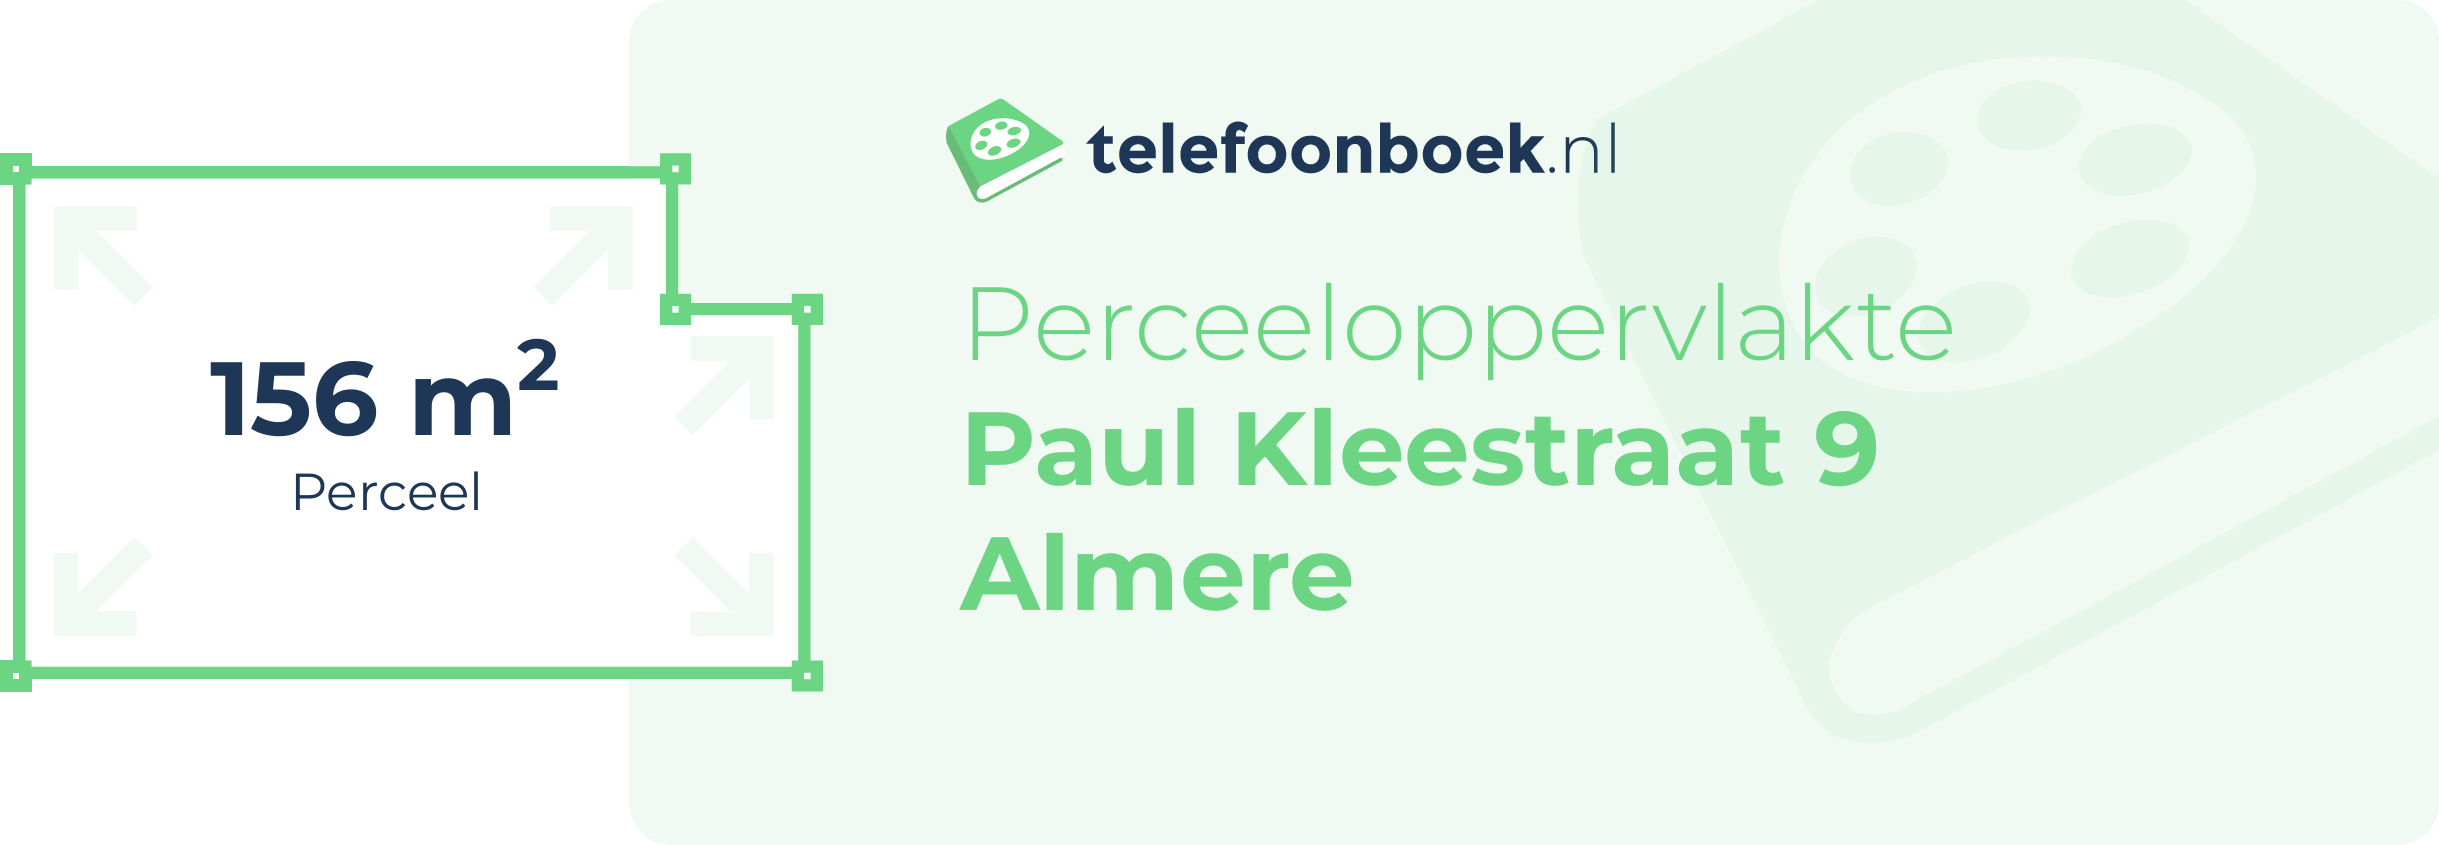 Perceeloppervlakte Paul Kleestraat 9 Almere